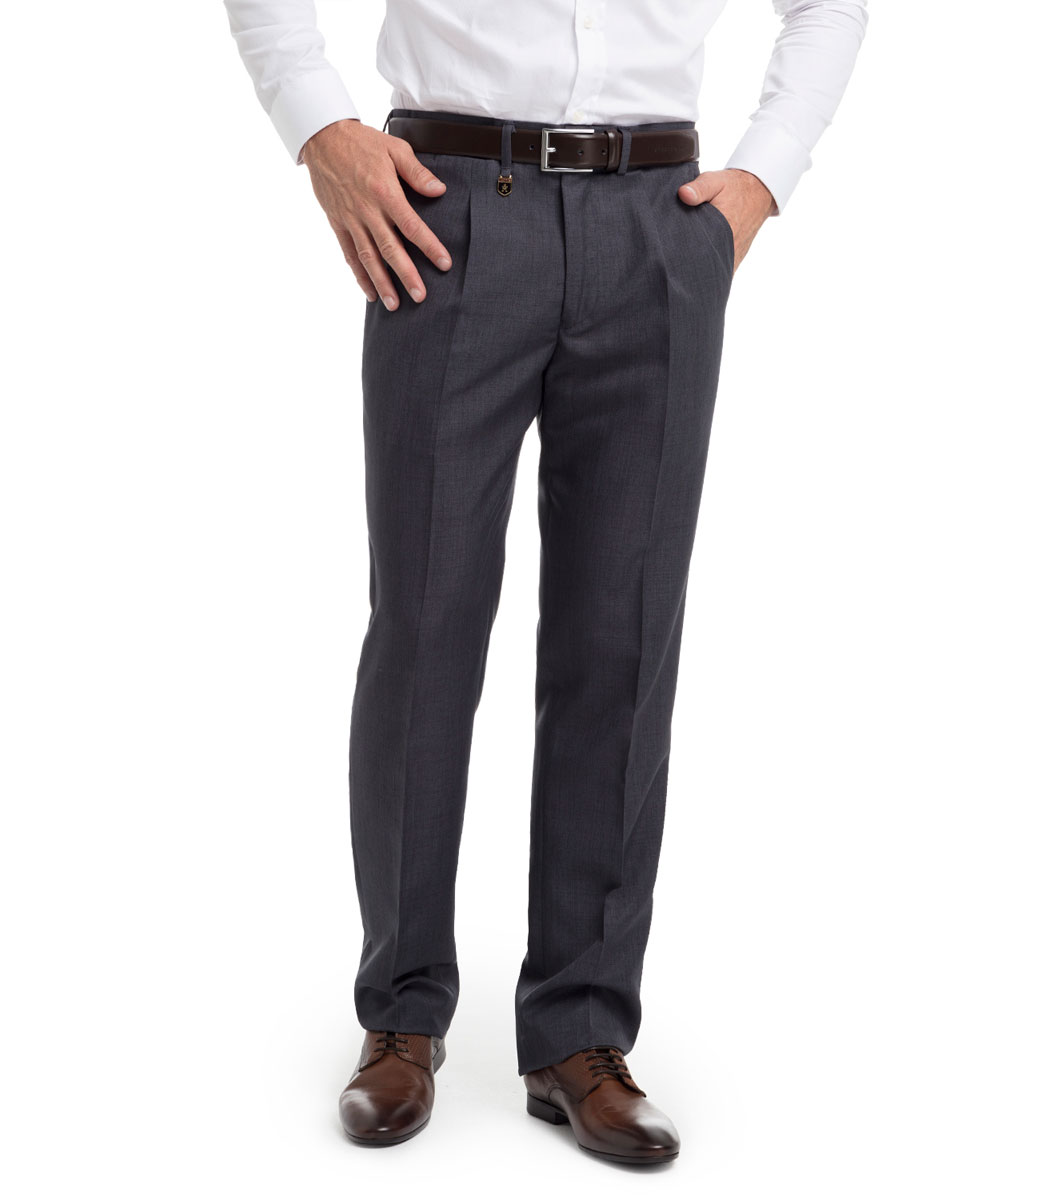 Pantalon Vestir para Hombre, con pinzas y tejido sarga fina de Verano